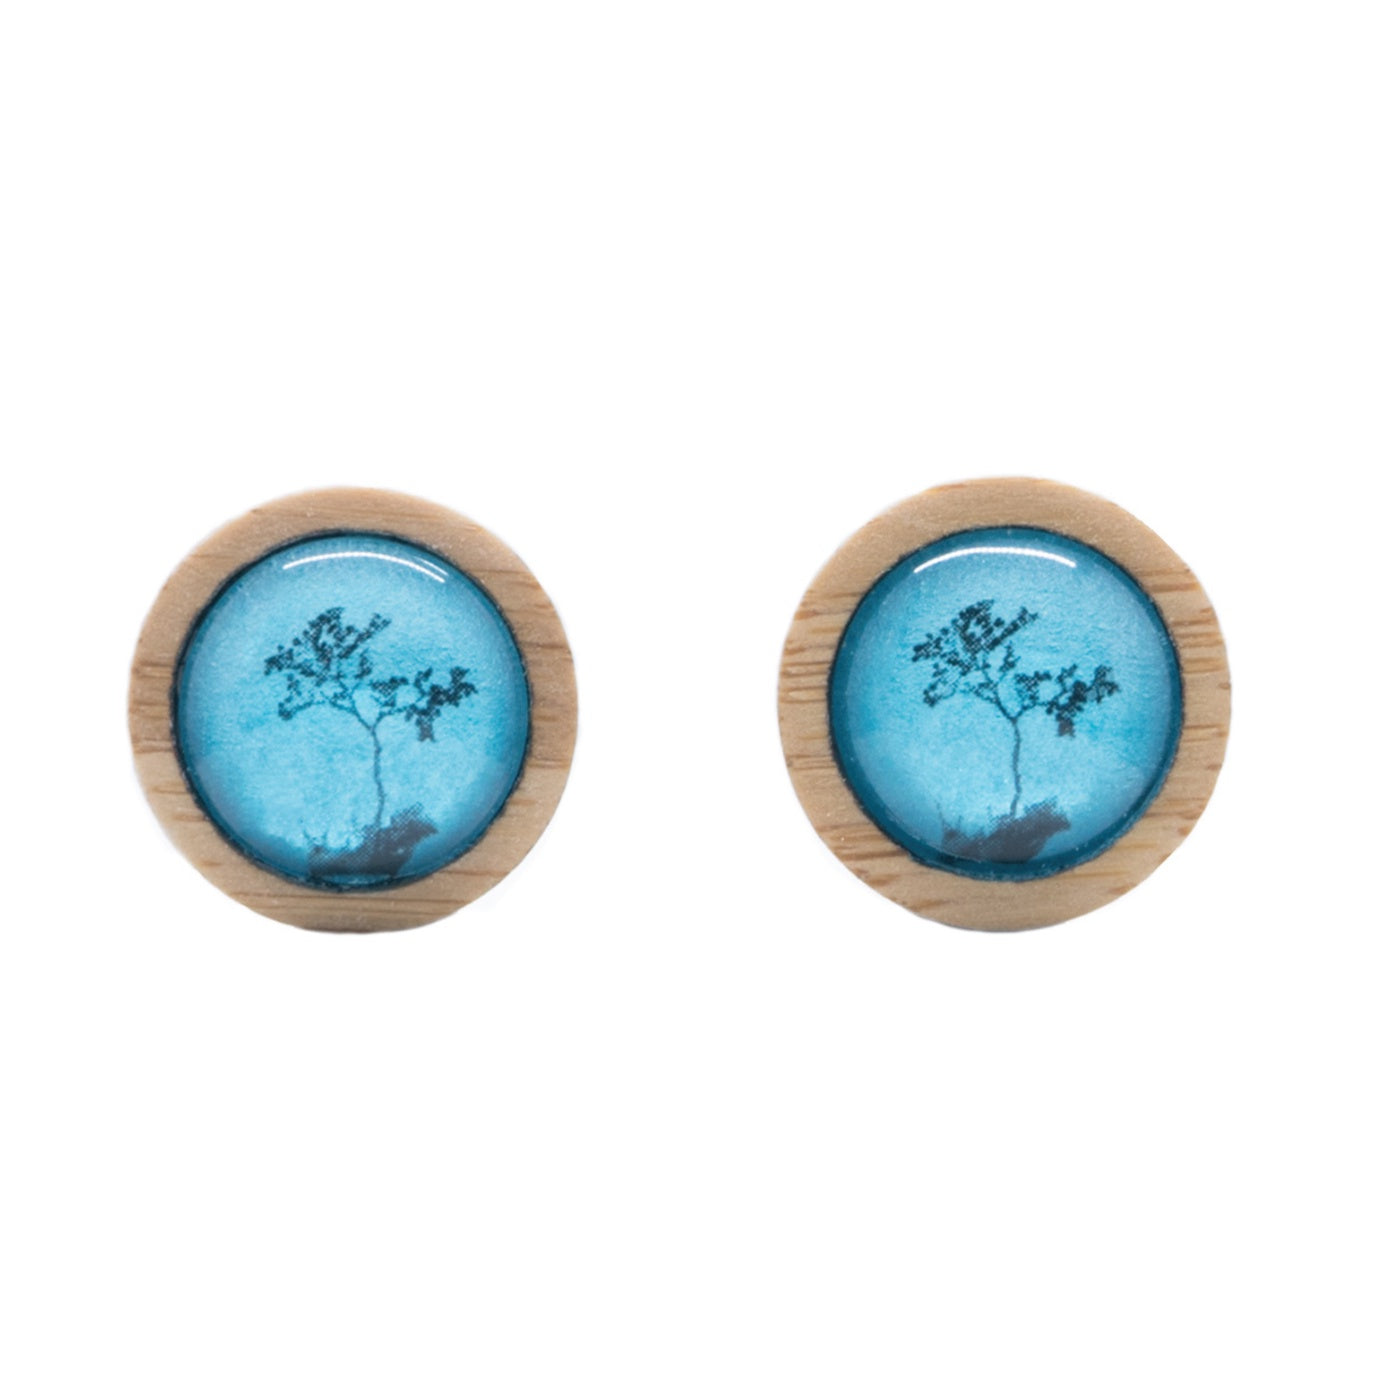 Myrtle & Me - Stud Earrings - Myrtle Tree - Metallic Blue